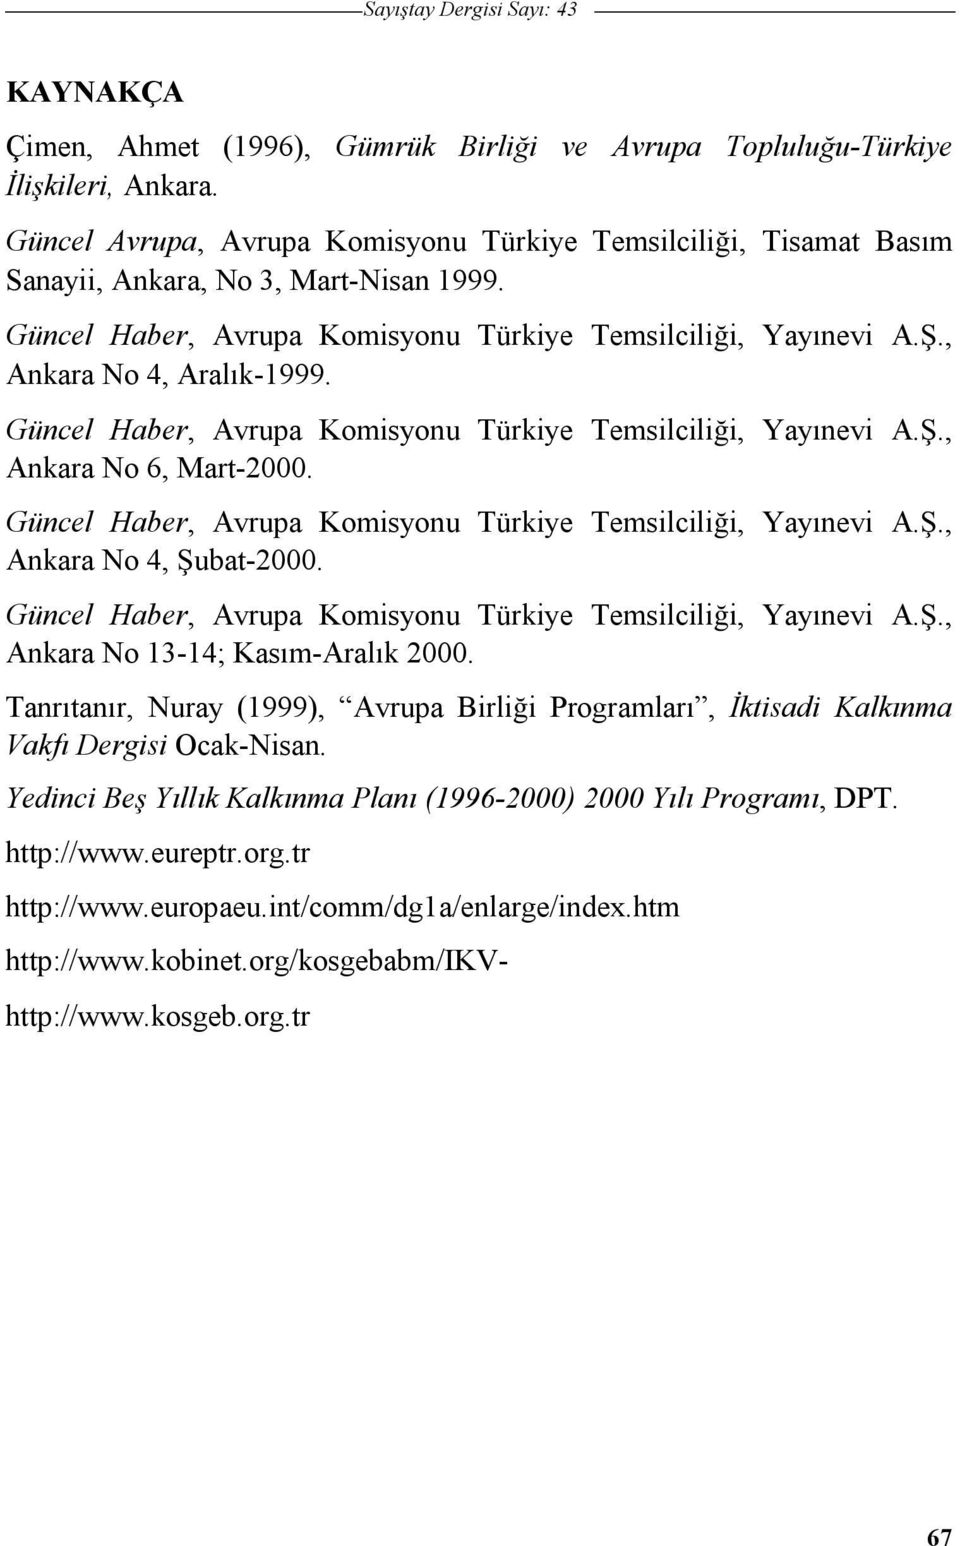 Güncel Haber, Avrupa Komisyonu Türkiye Temsilcilii, Yayınevi A.., Ankara No 6, Mart-2000. Güncel Haber, Avrupa Komisyonu Türkiye Temsilcilii, Yayınevi A.., Ankara No 4, ubat-2000.